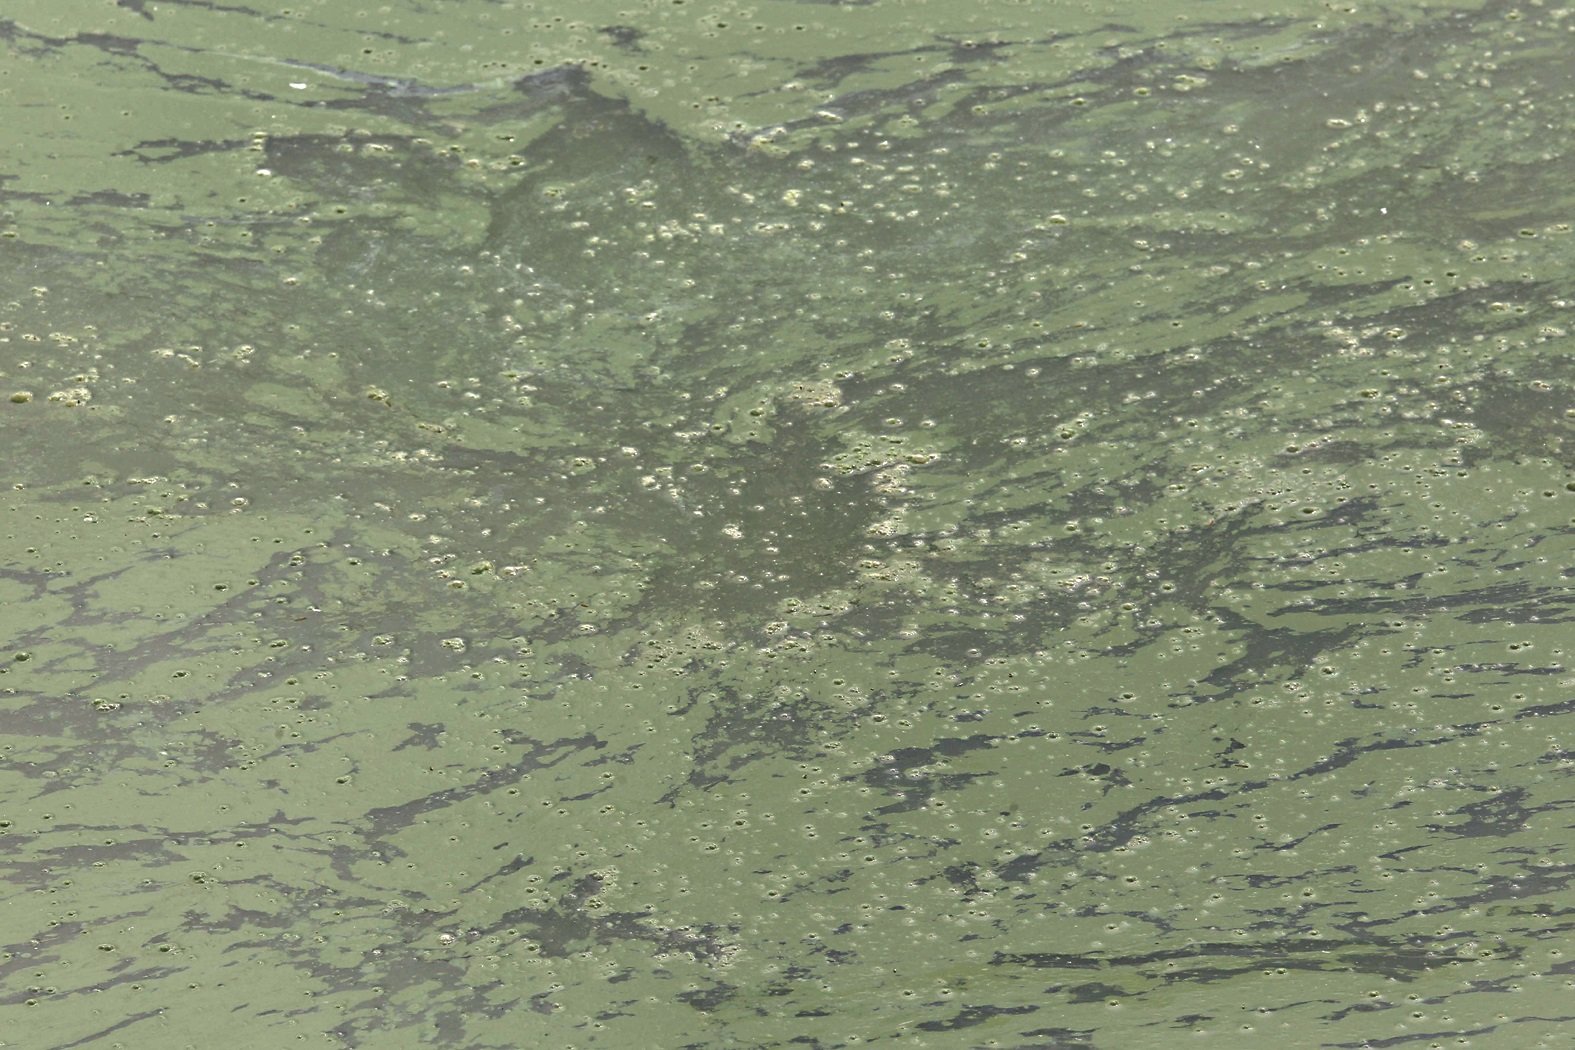 水面上出现的一层绿色浮游物就是藻类，鱼塘内的巴丁鱼一般都会靠吸食这些藻类增加营养。